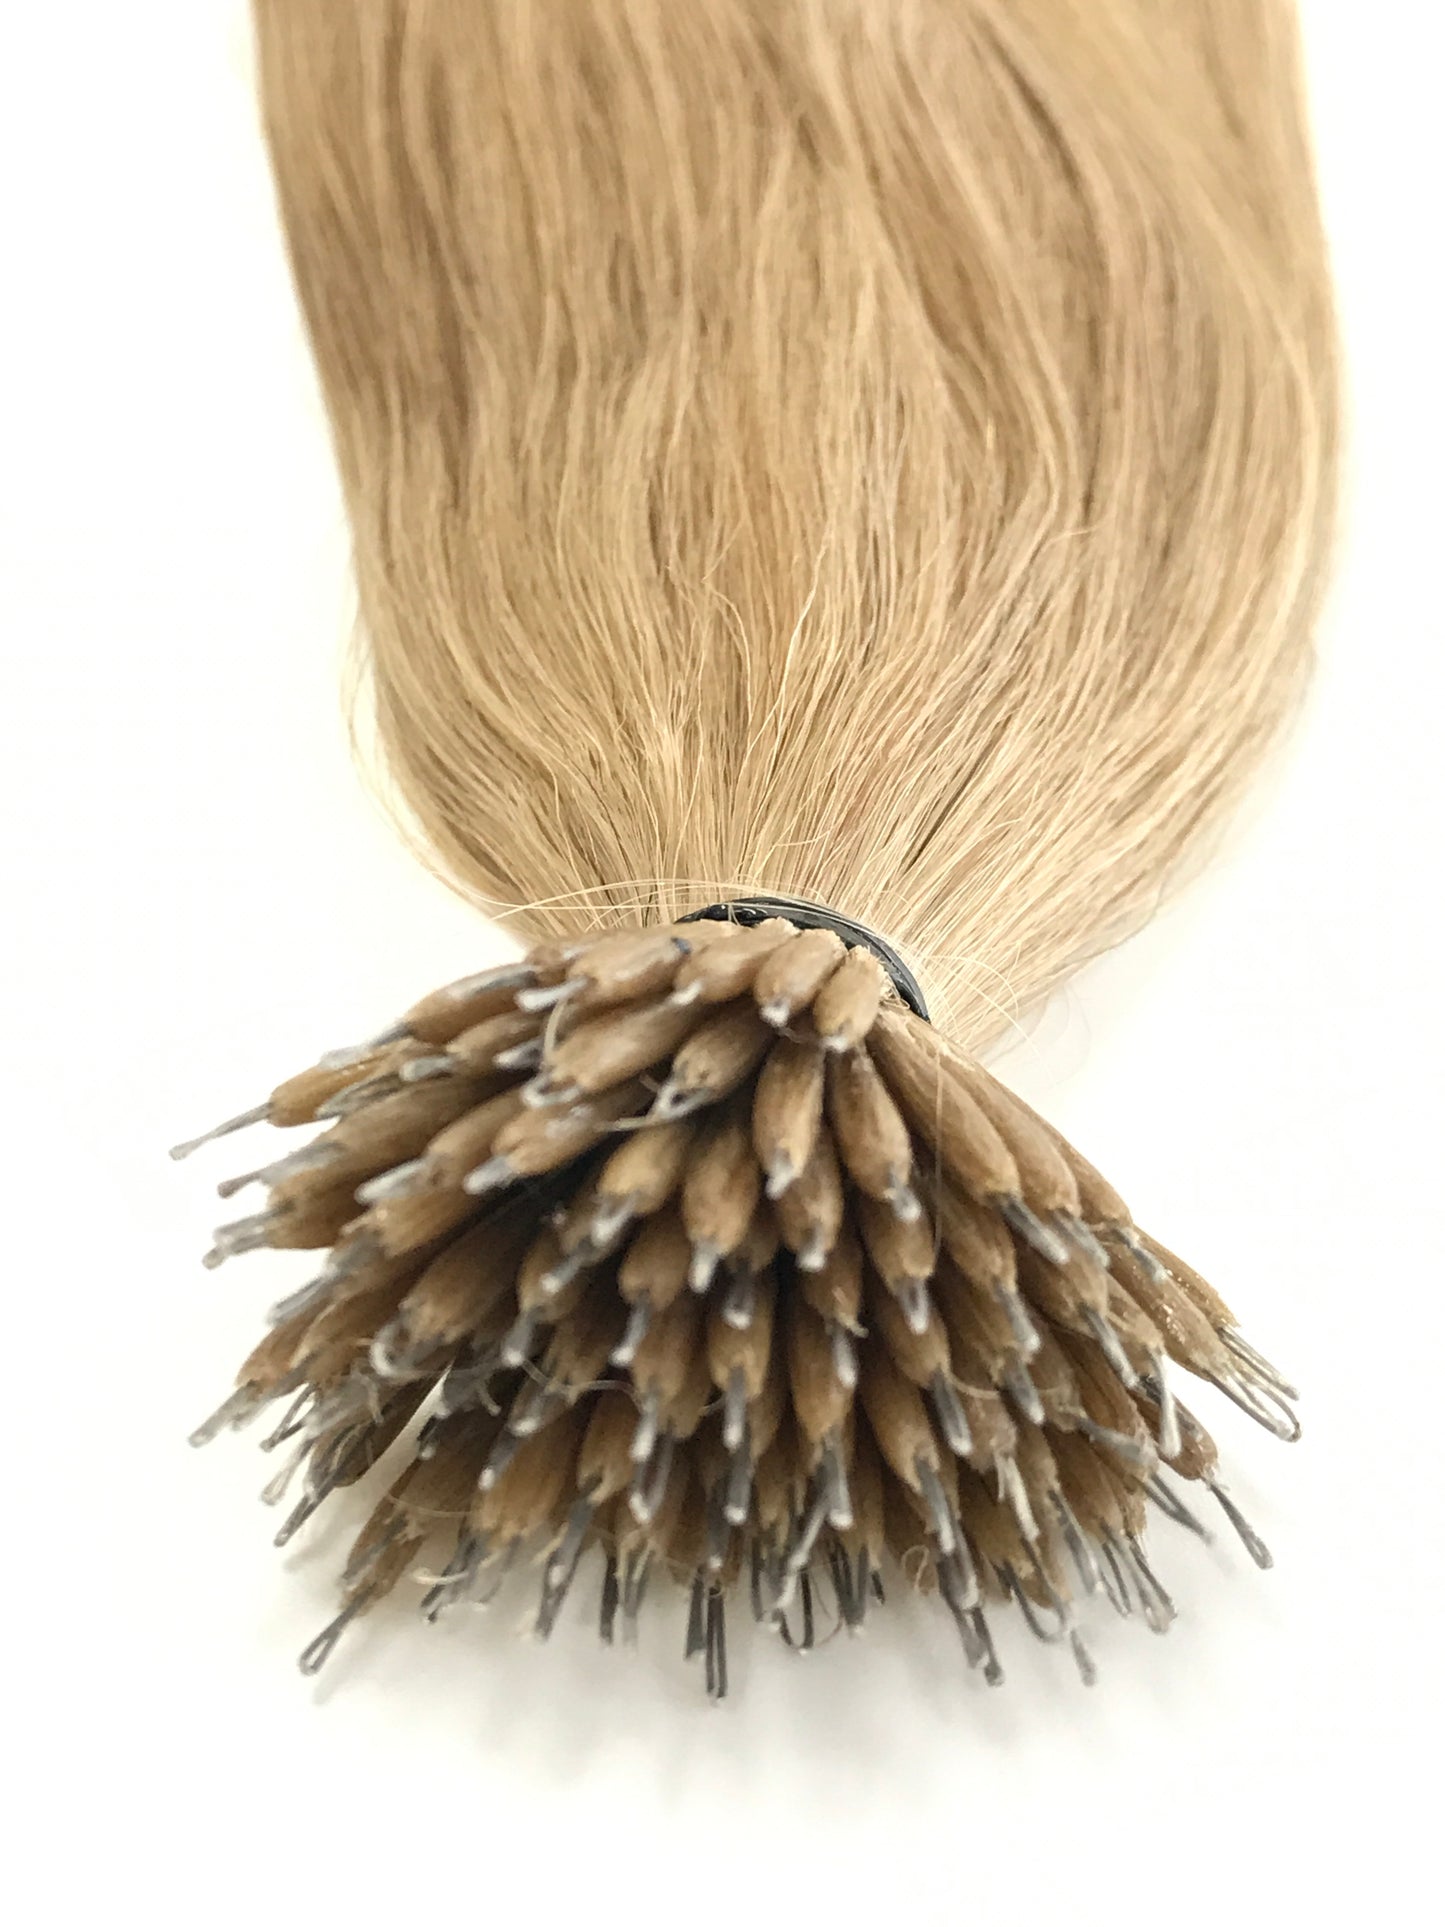 Russisches reines Remy-Echthaar, Nano-Spitzen-Haarverlängerungen, glatt, 24'', schneller Versand!